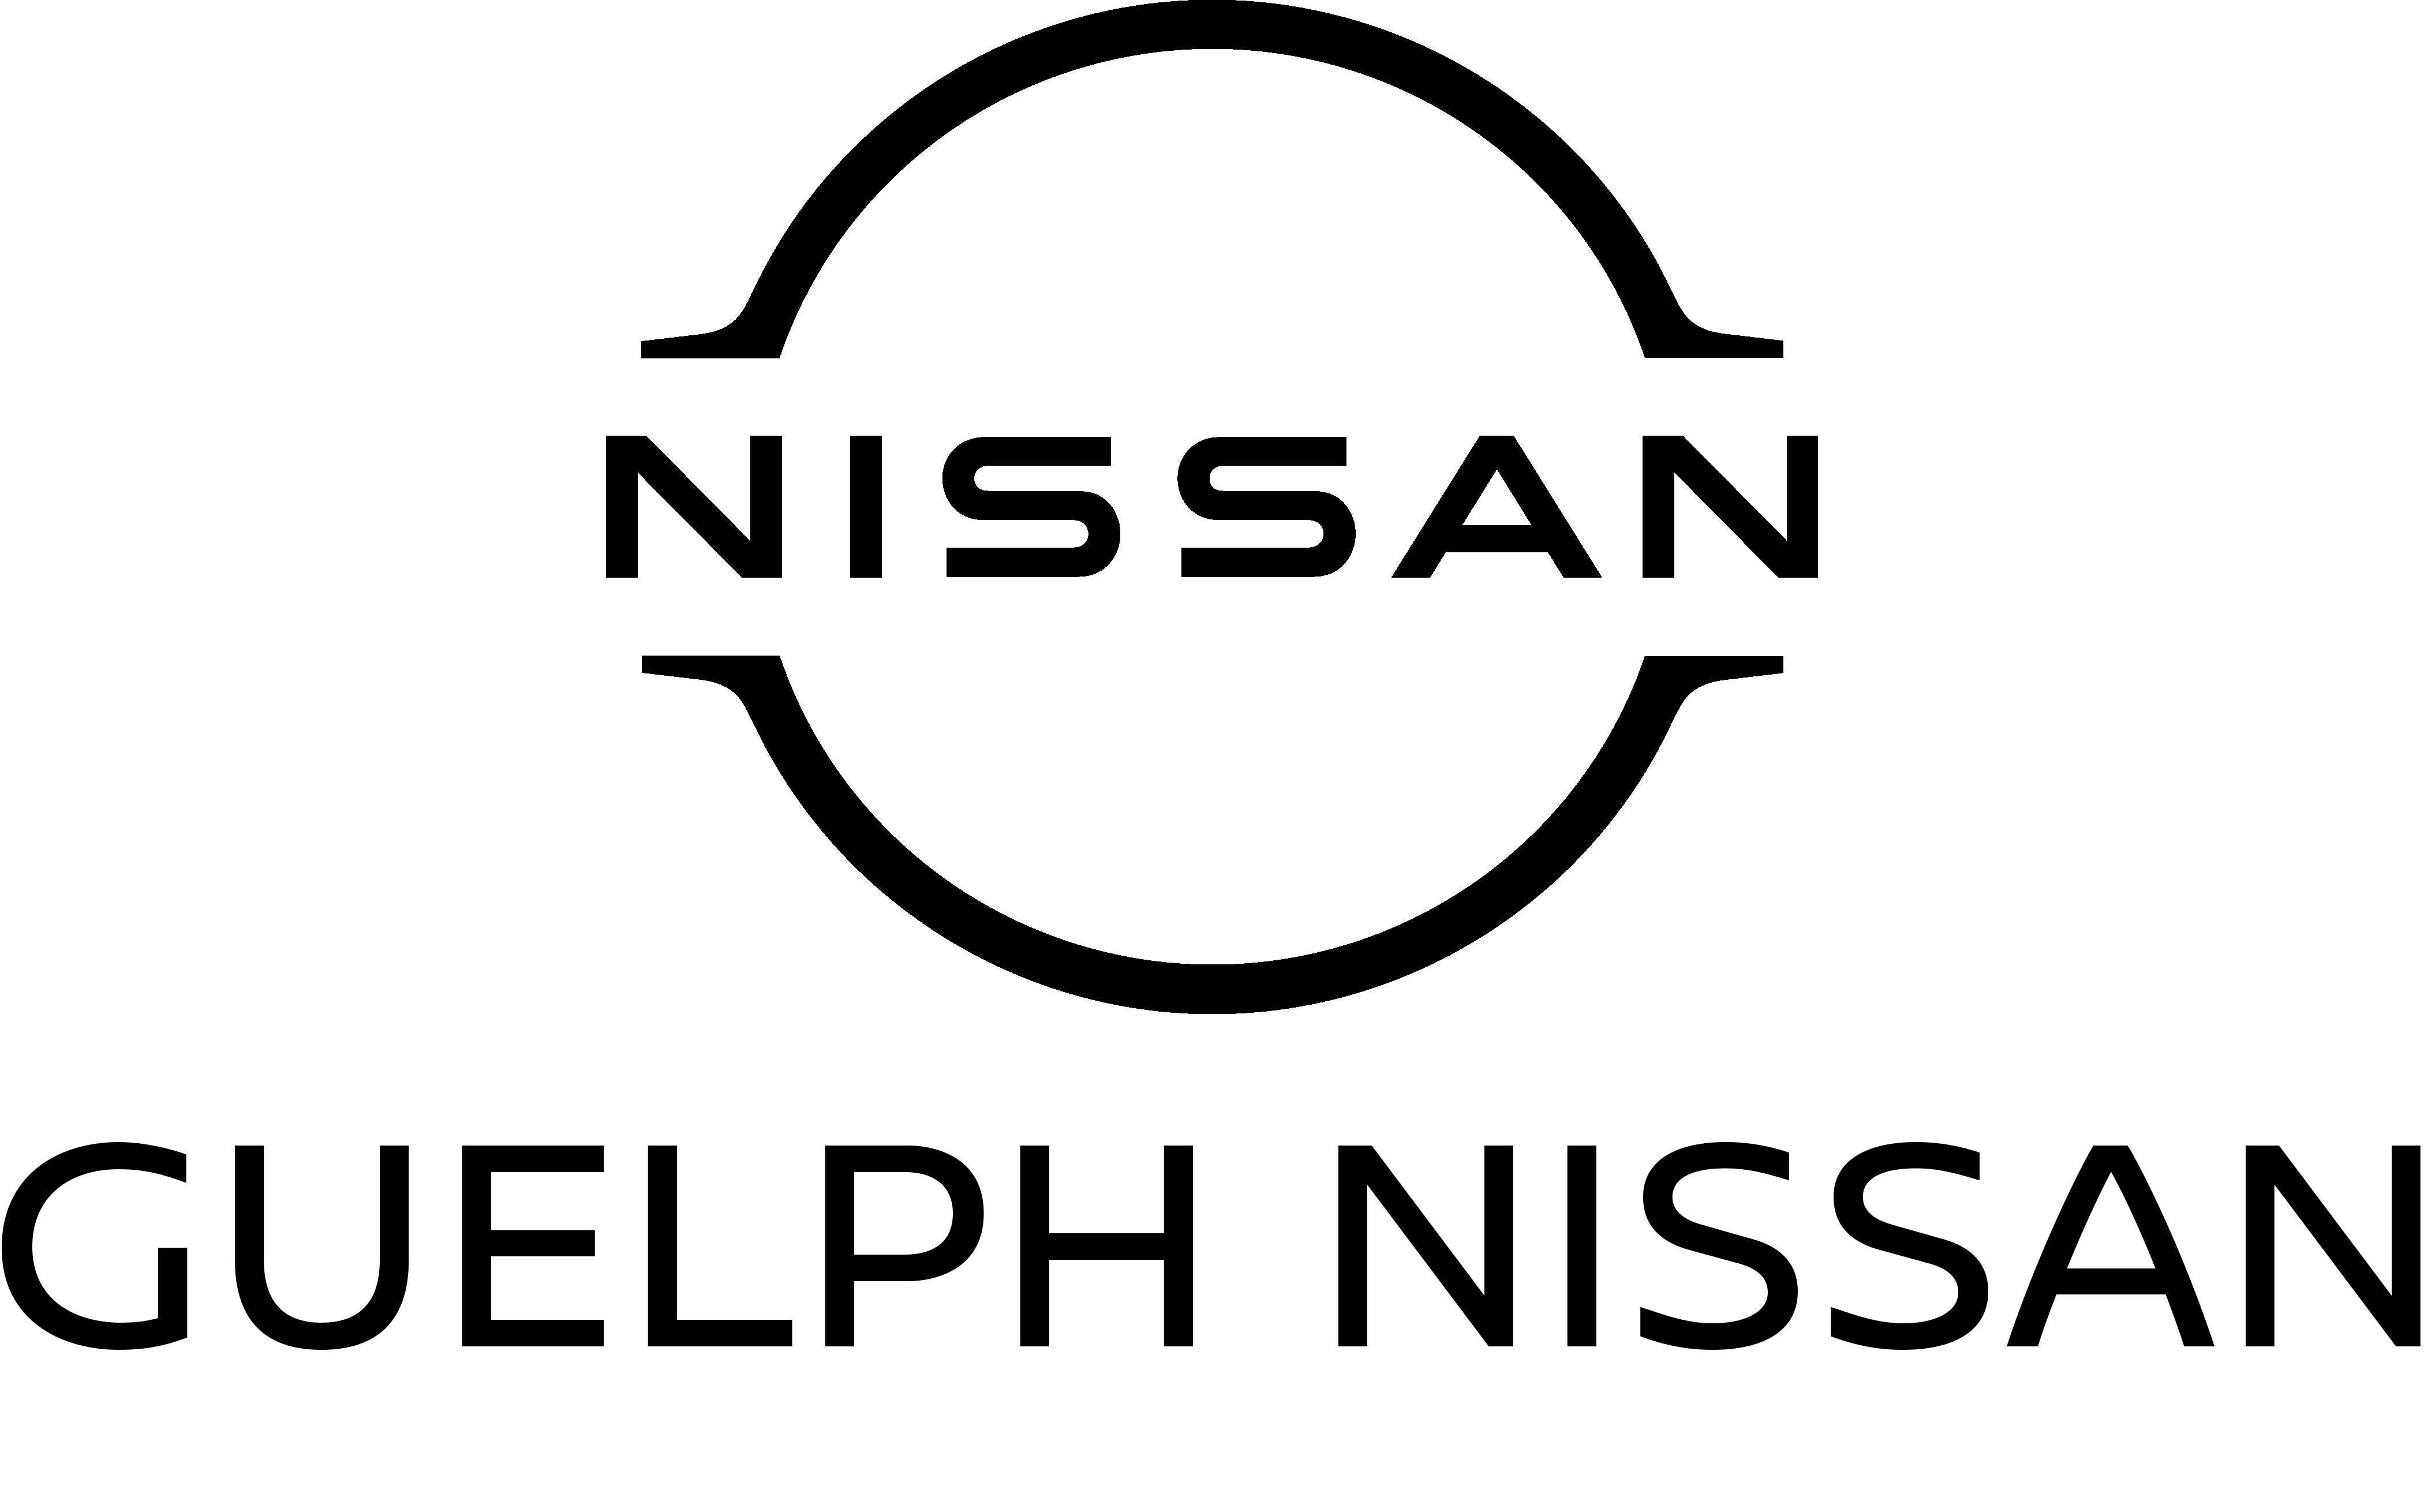 Guelph Nissan